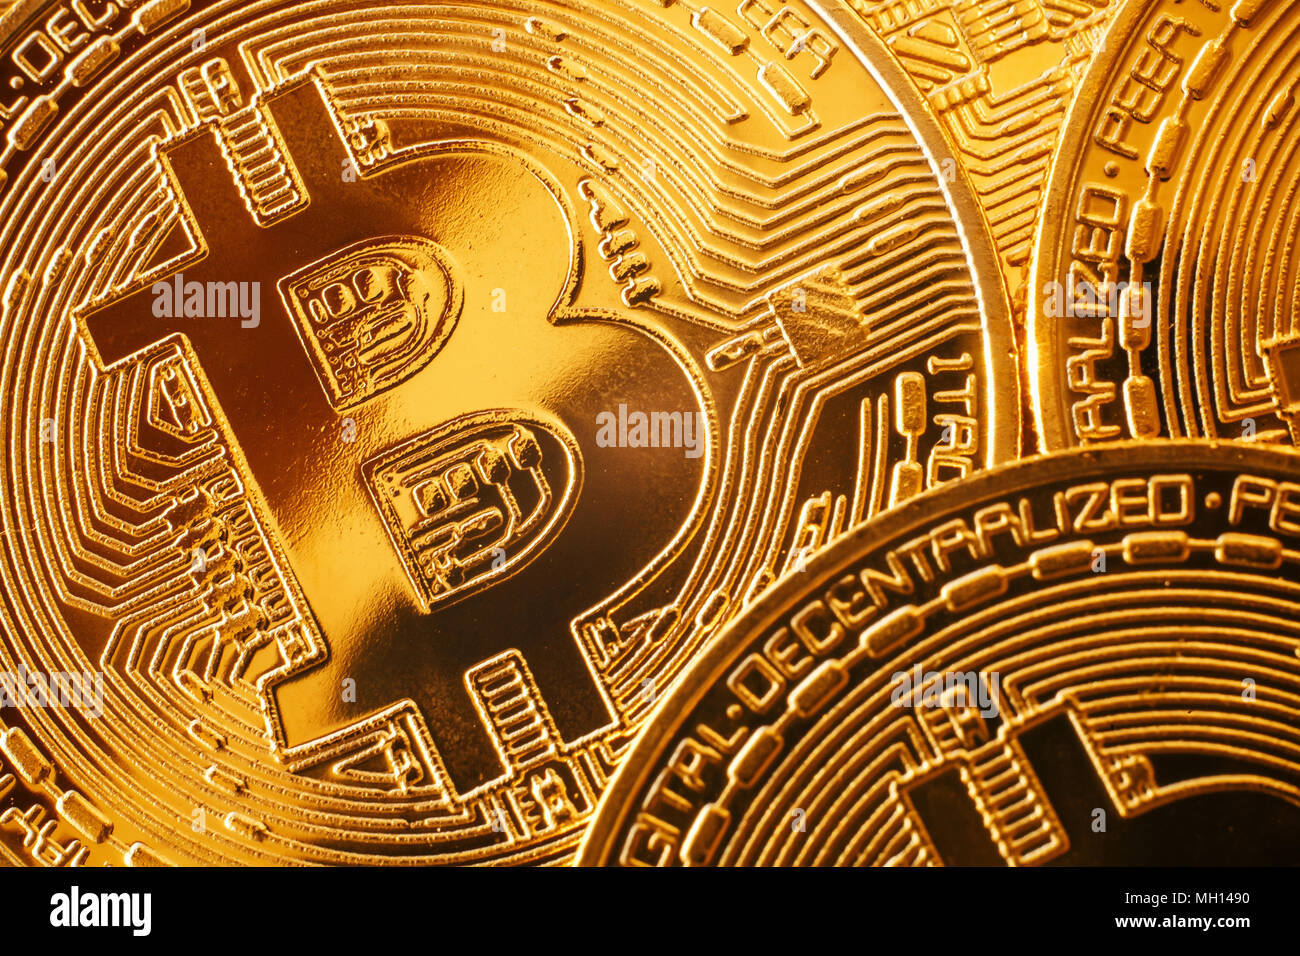 Một mẫu hoa văn Bitcoin vàng rực rỡ nằm trong bộ sưu tập đã làm nên tên tuổi của những nhà đầu tư thông minh trên Internet. Với những khối lượng lớn của tiền điện tử, nó là một trong những trải nghiệm khám phá đầy thú vị. Có bao giờ bạn tưởng tượng trở thành người sở hữu nhiều tiền ảo như vậy chưa?